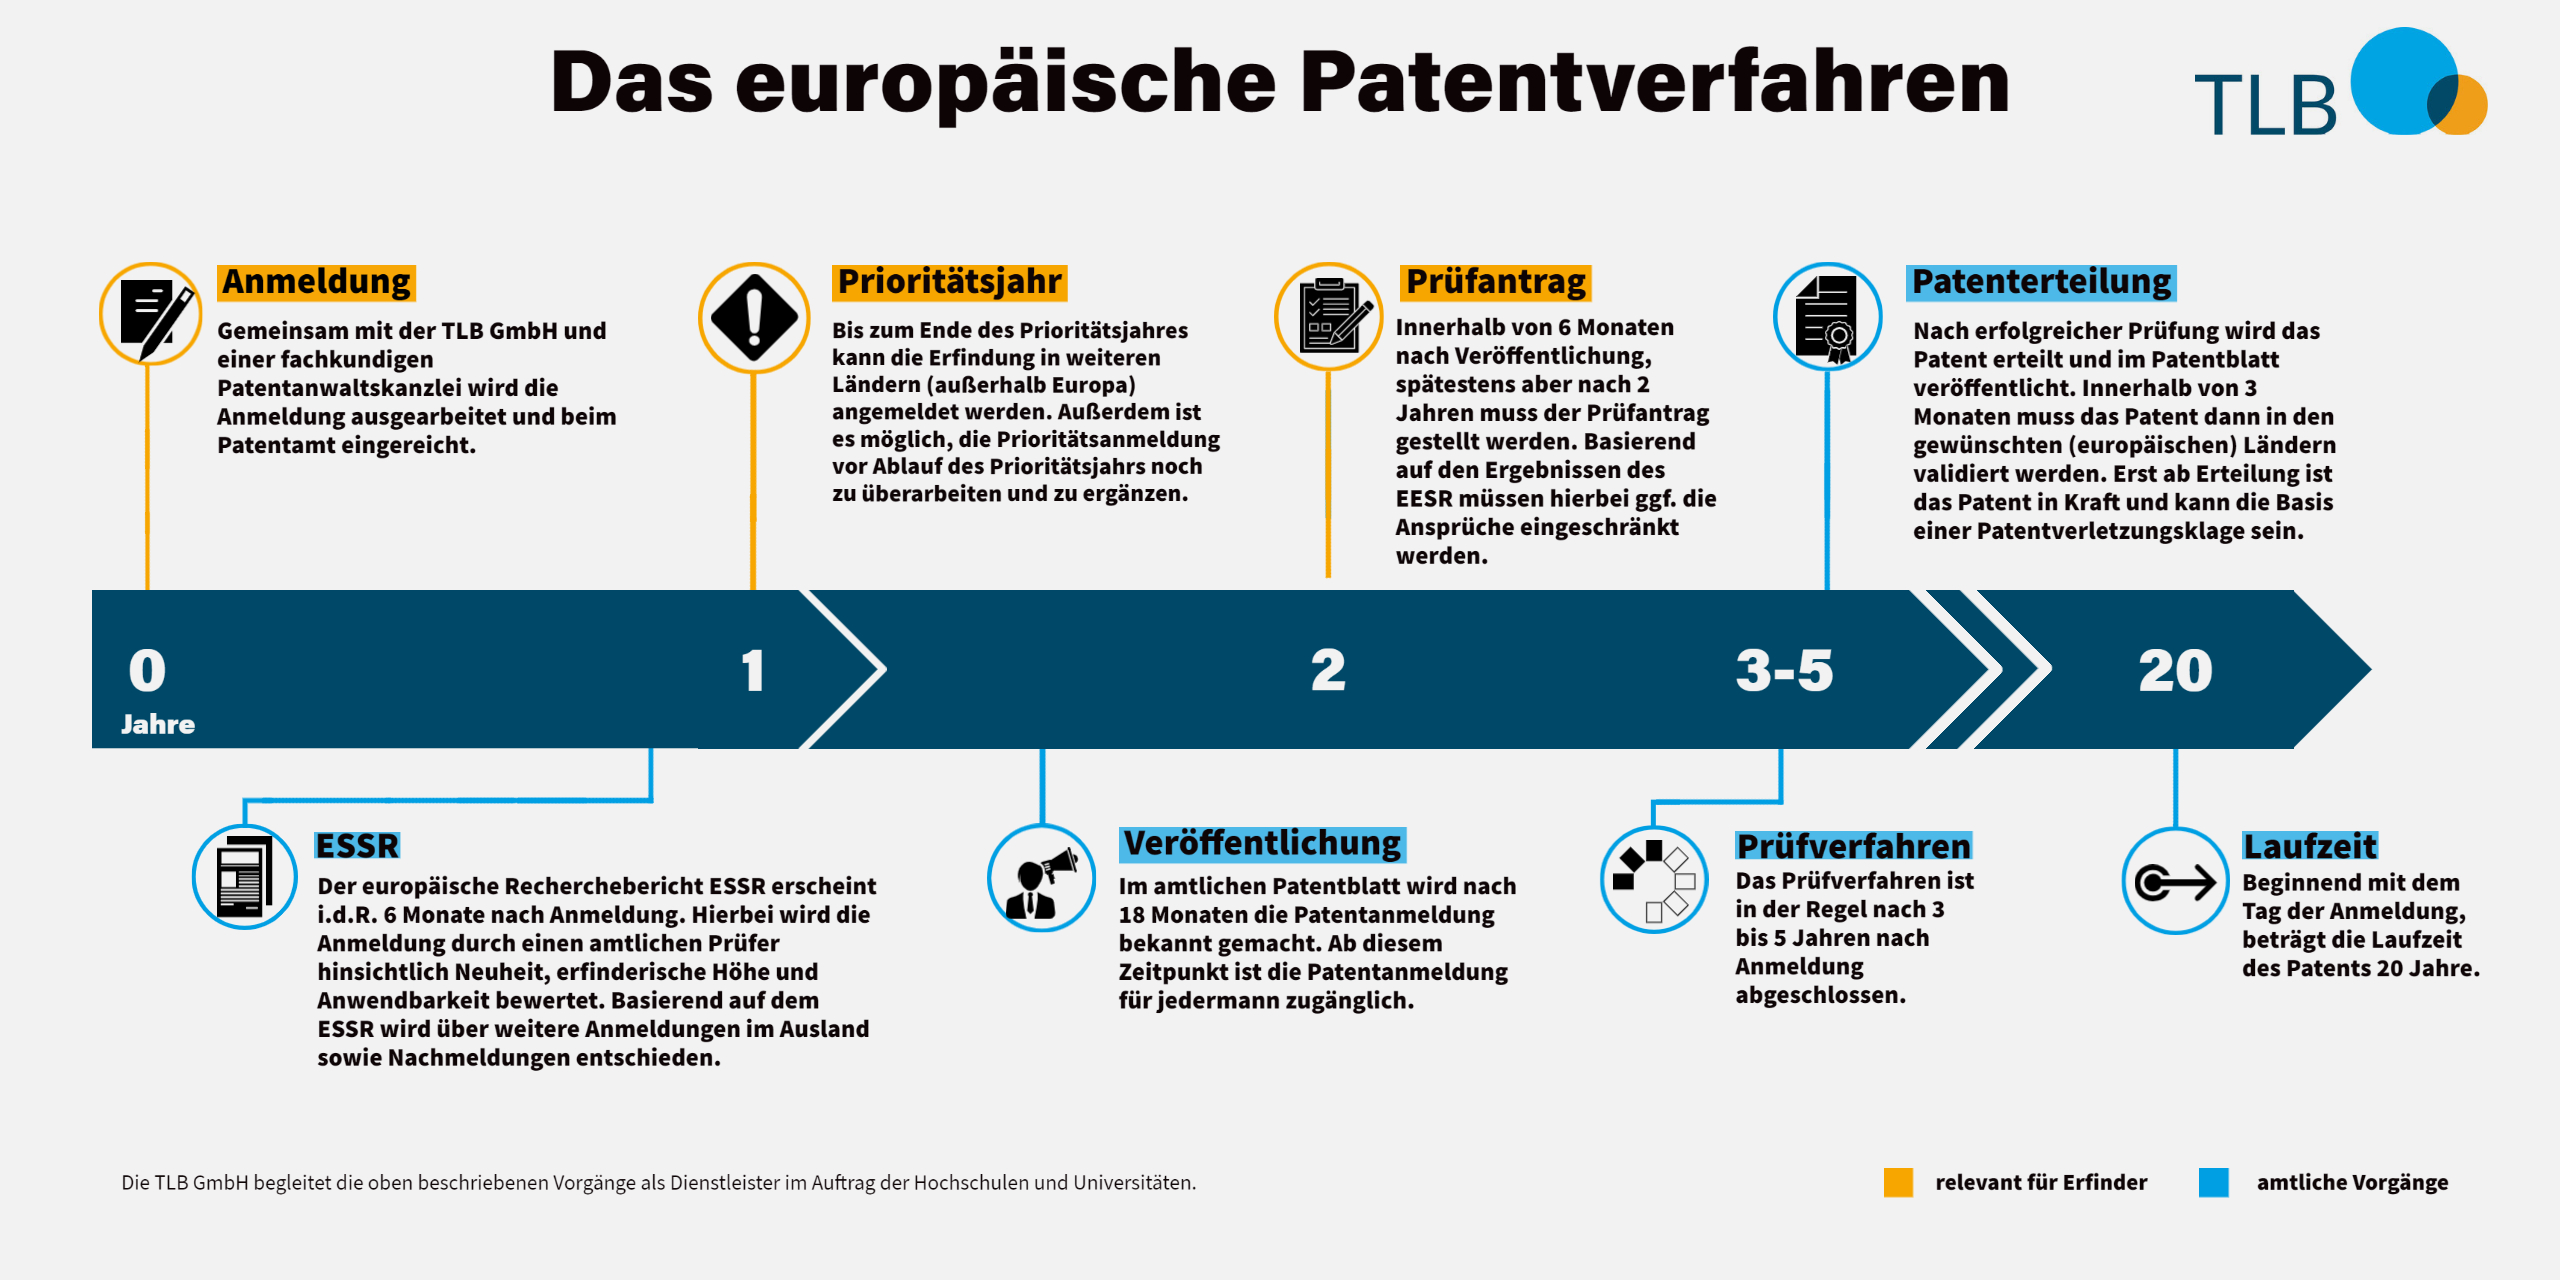 Übersicht über das europäische Patentverfahren